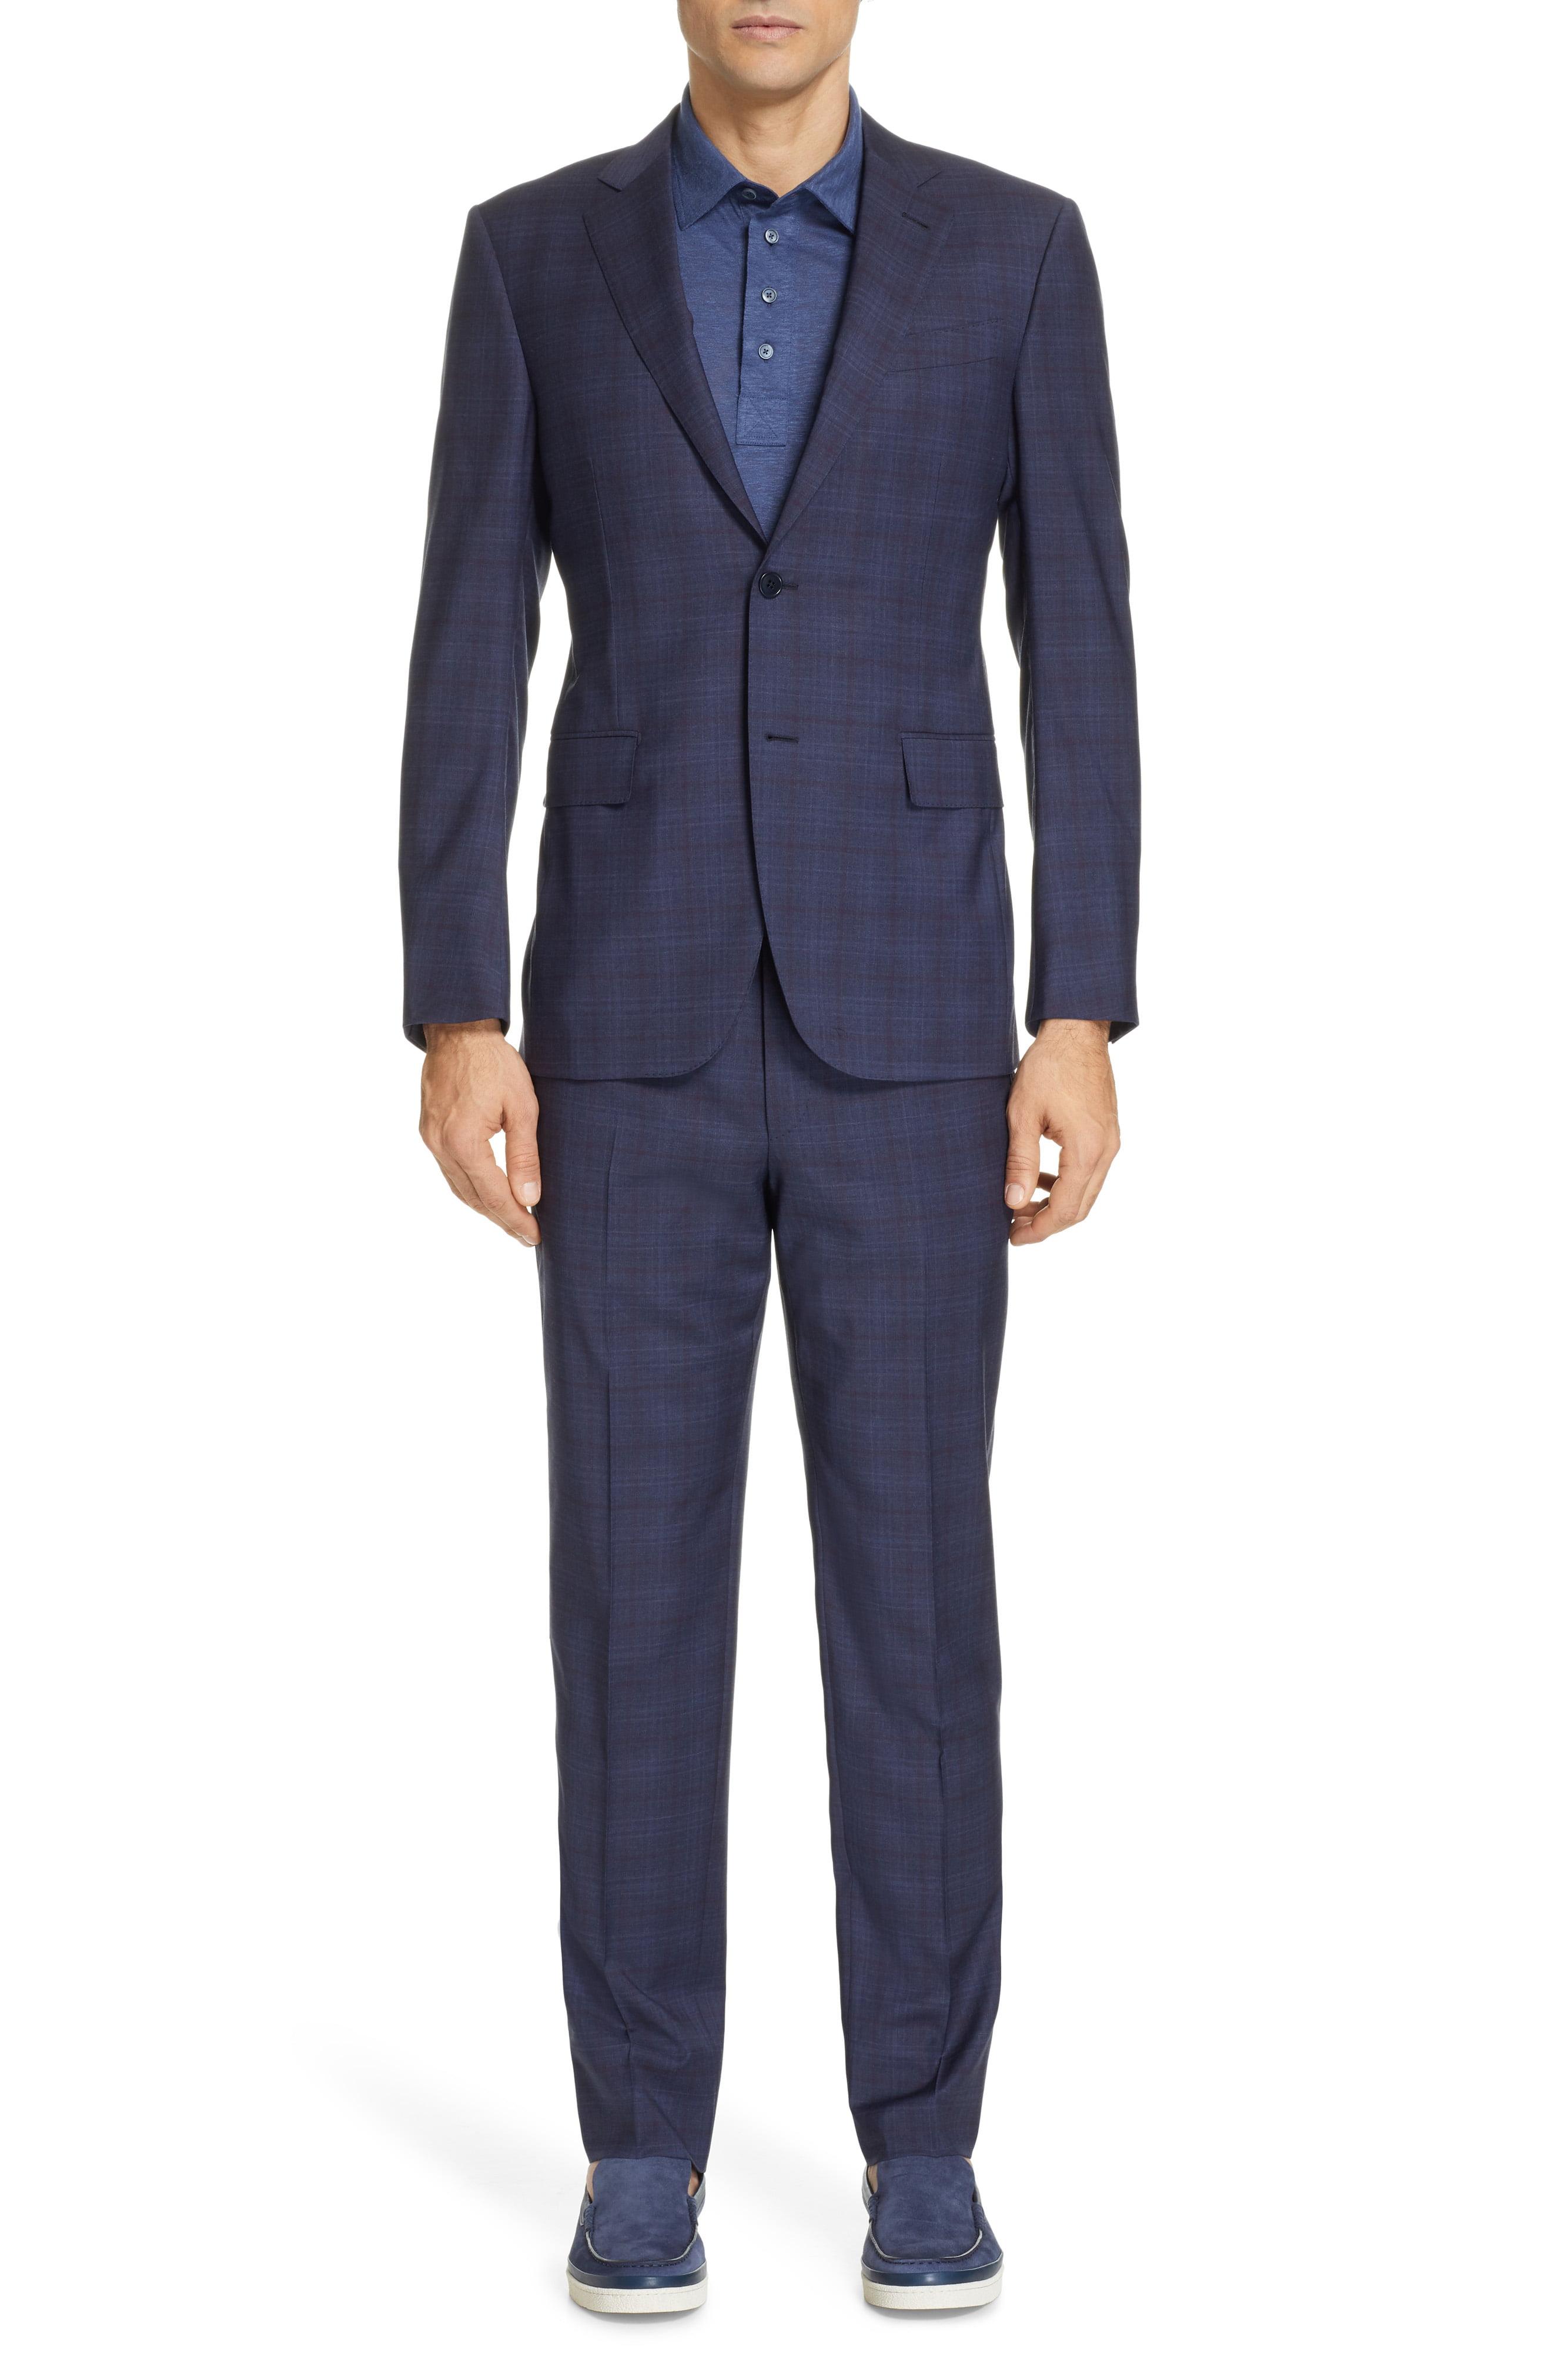 Lyst - Ermenegildo Zegna Milano Classic Fit Plaid Wool Suit in Blue for Men